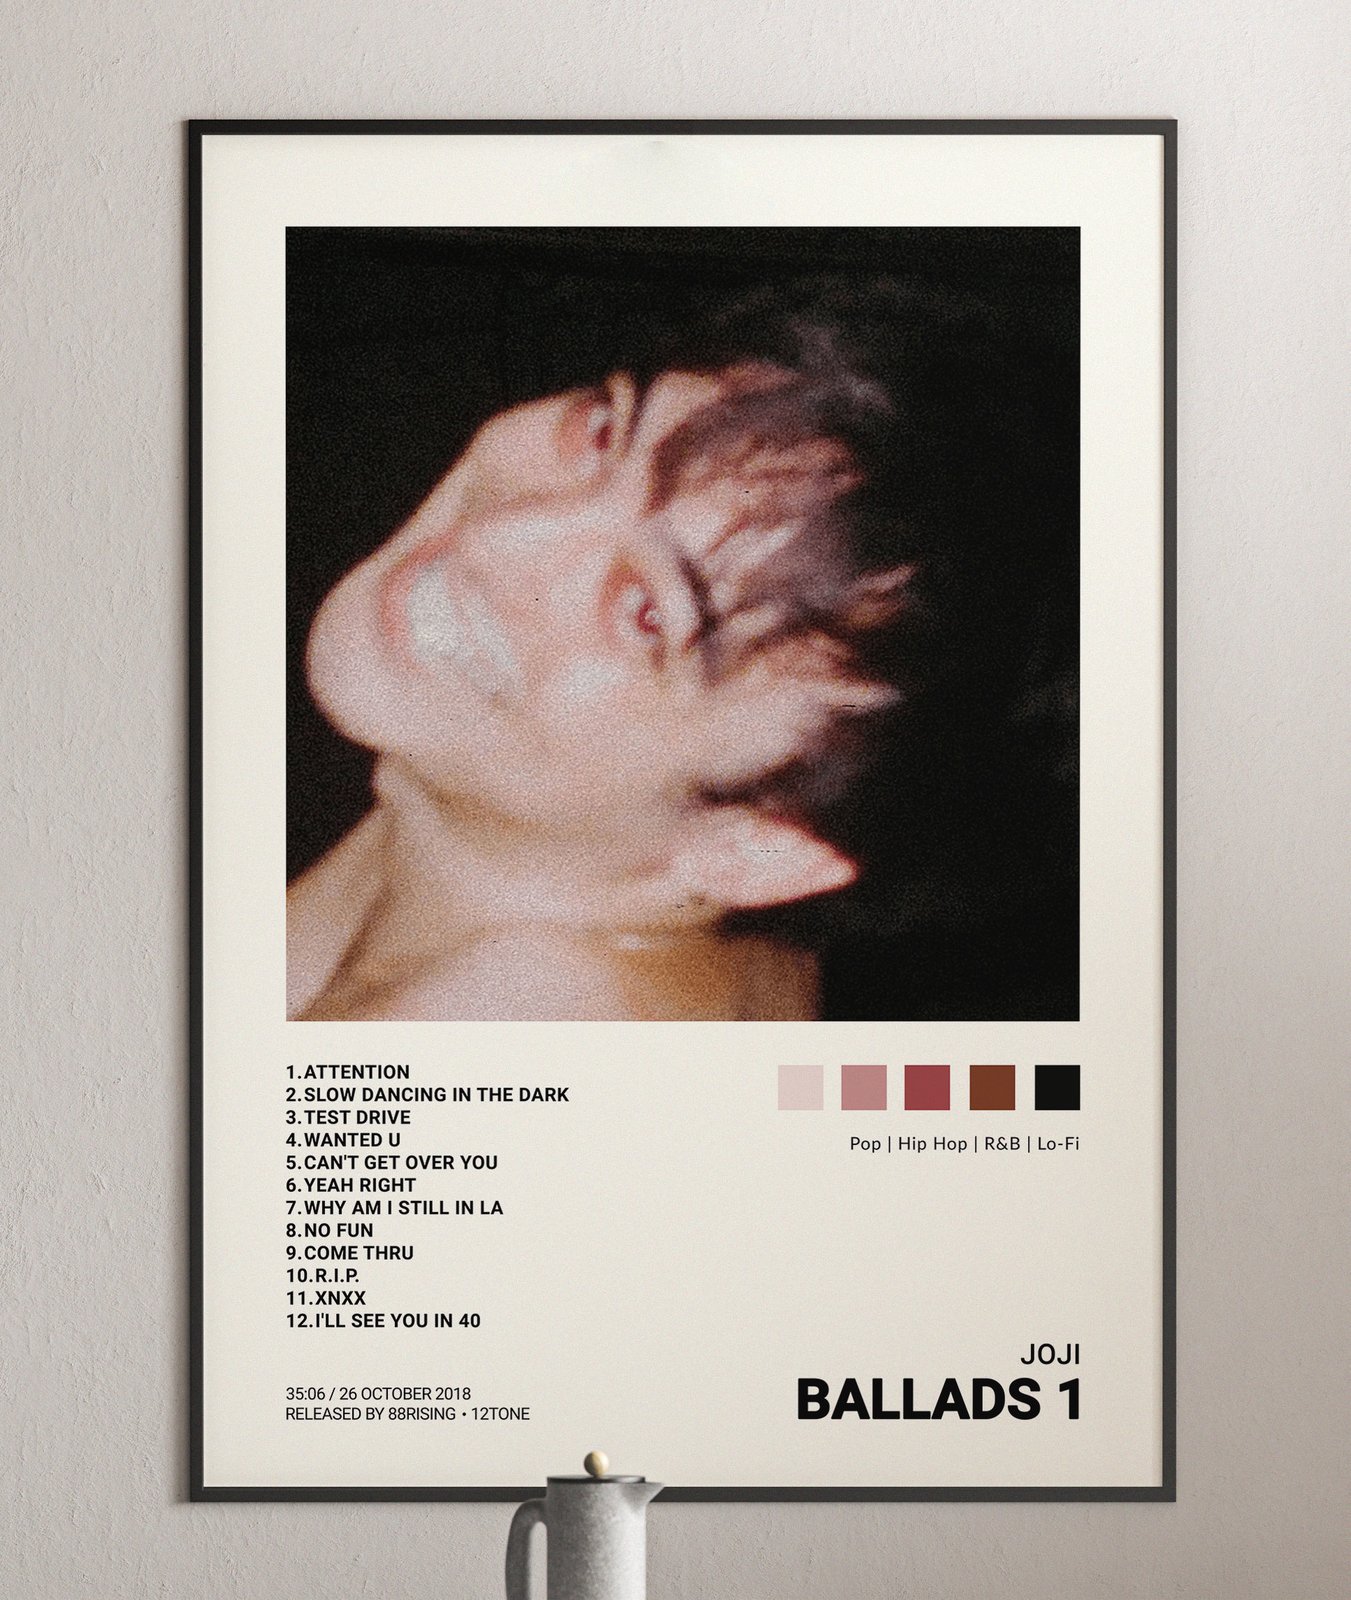 レア!新品!JOJI 『BALLADS 1』 レコード LP 88rising - 洋楽